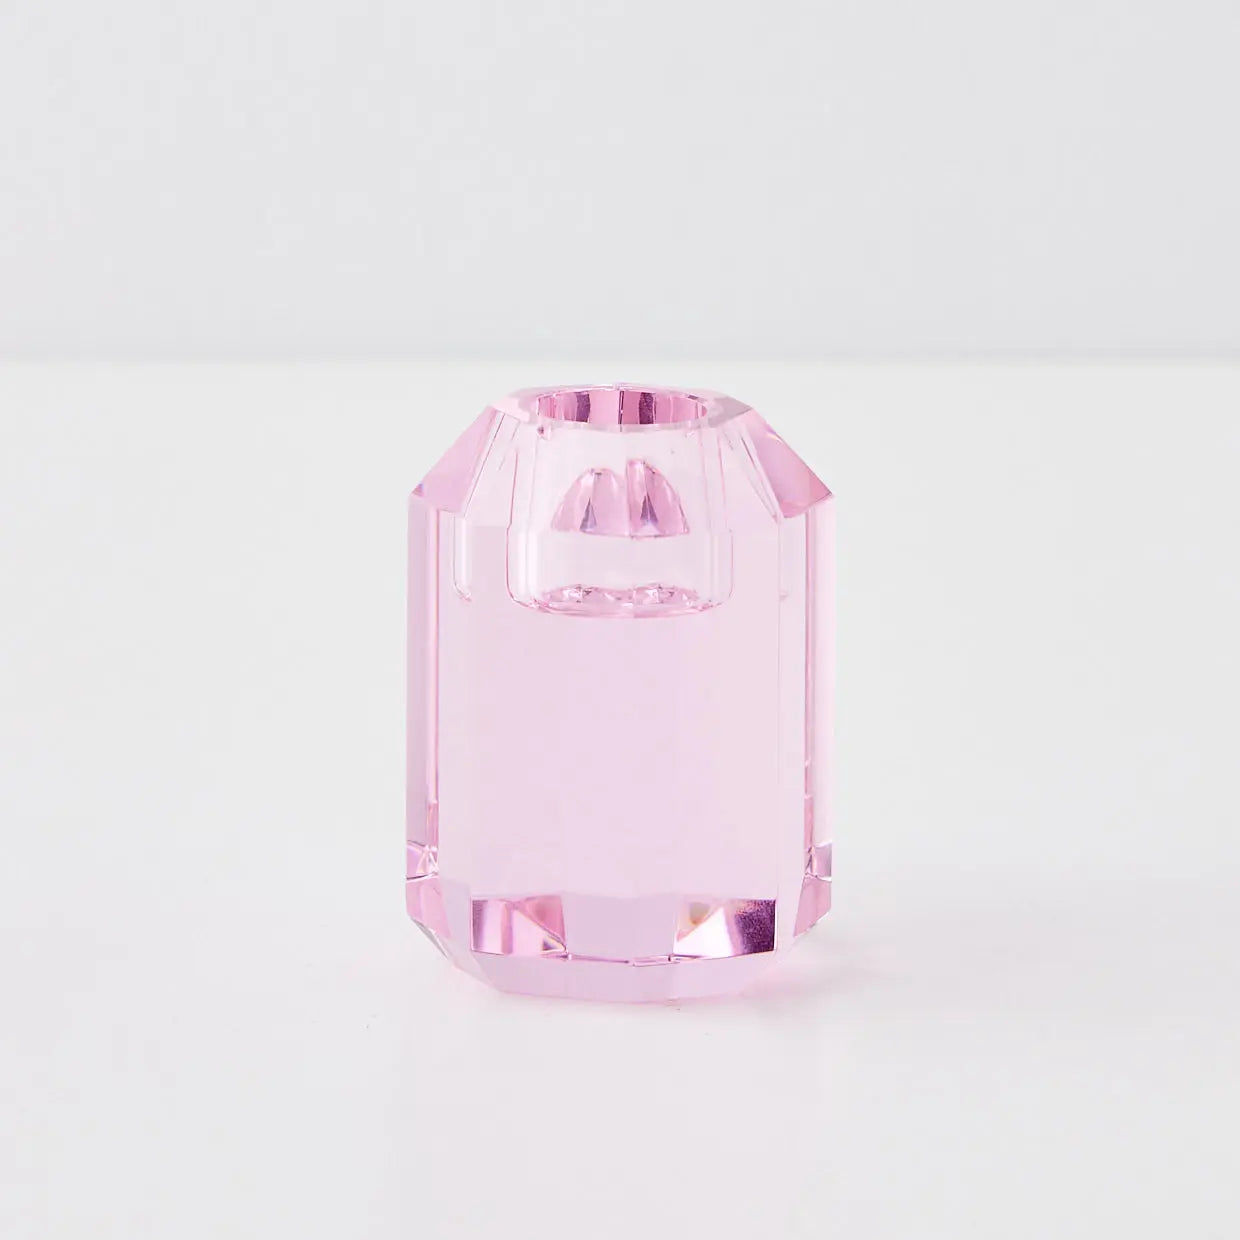 Briolette Crystal Taper Candle Holder Pink - GigiandTom